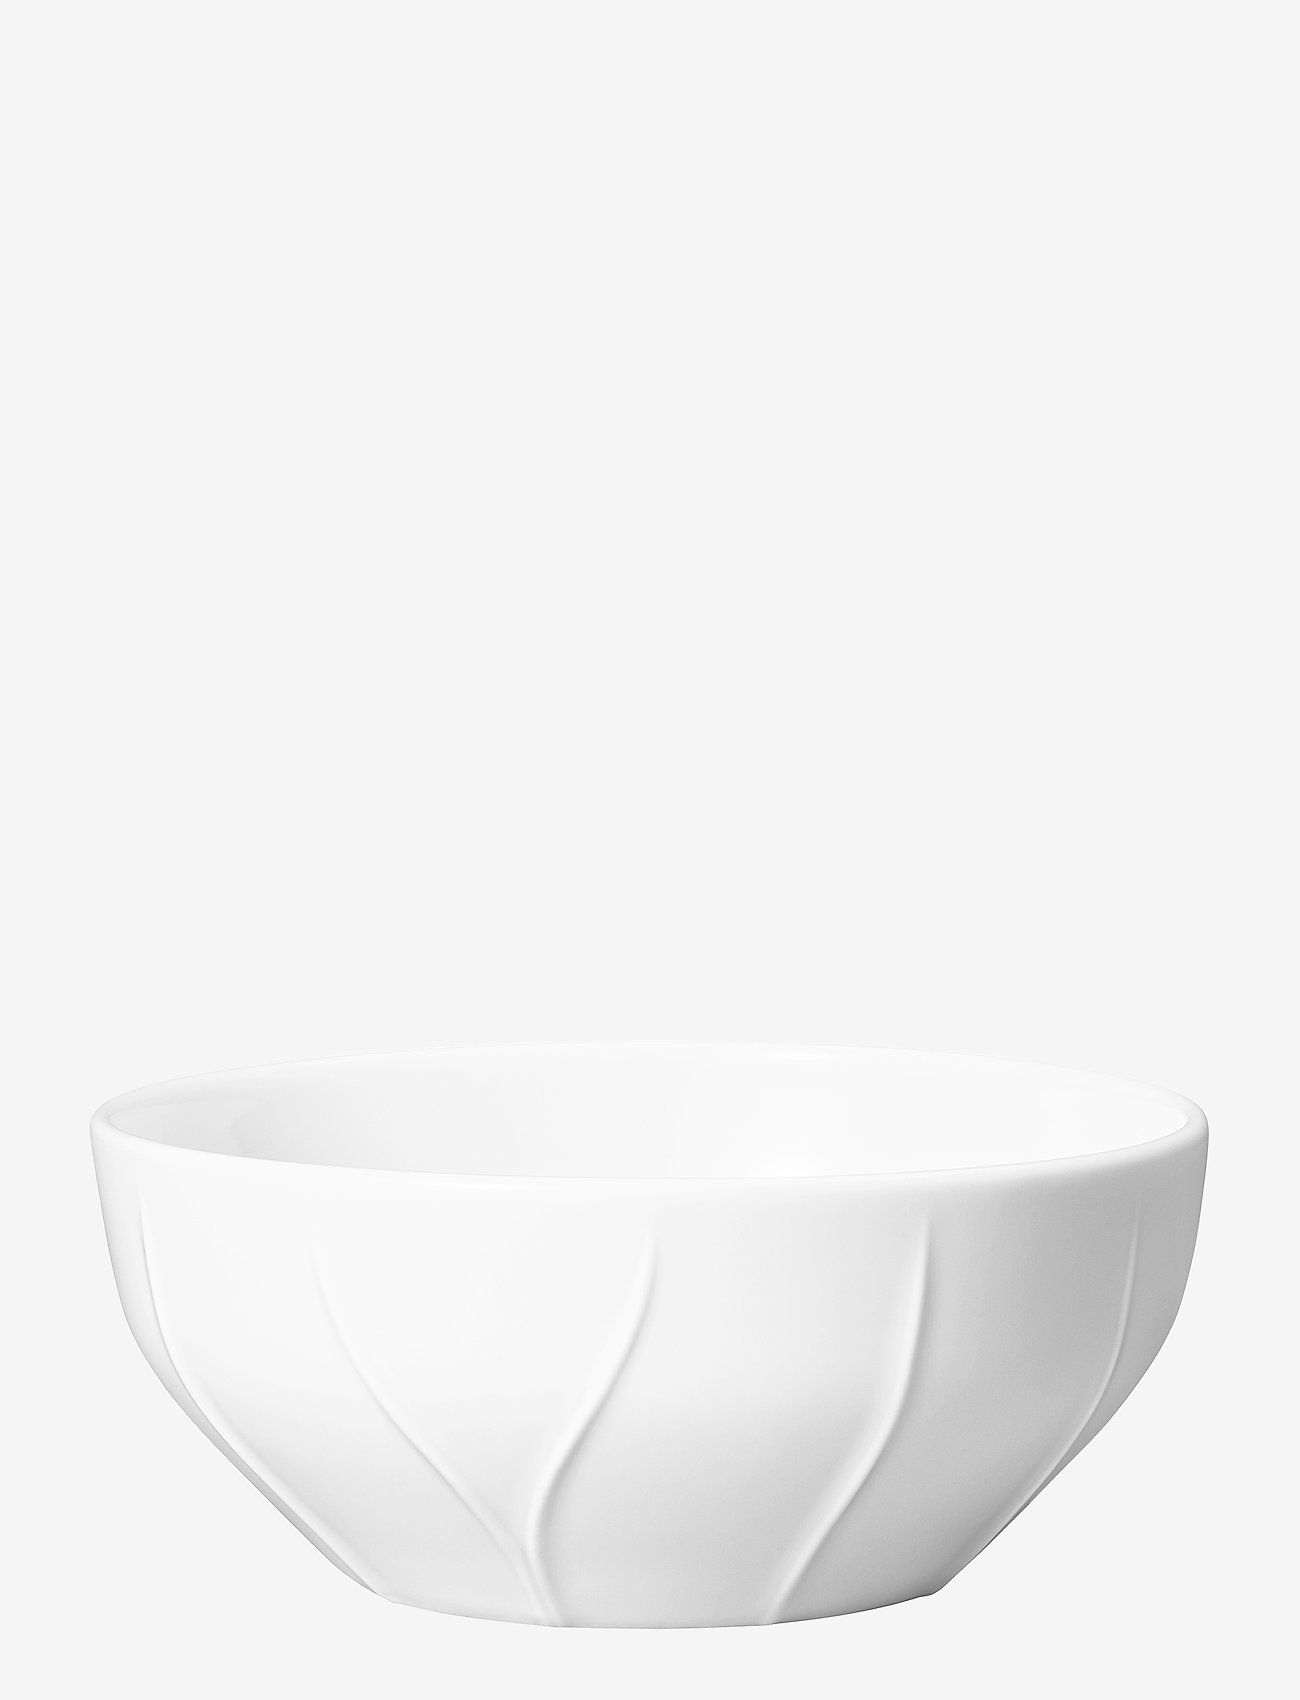 Rörstrand - Pli Blanc bowl - mažiausios kainos - white - 0